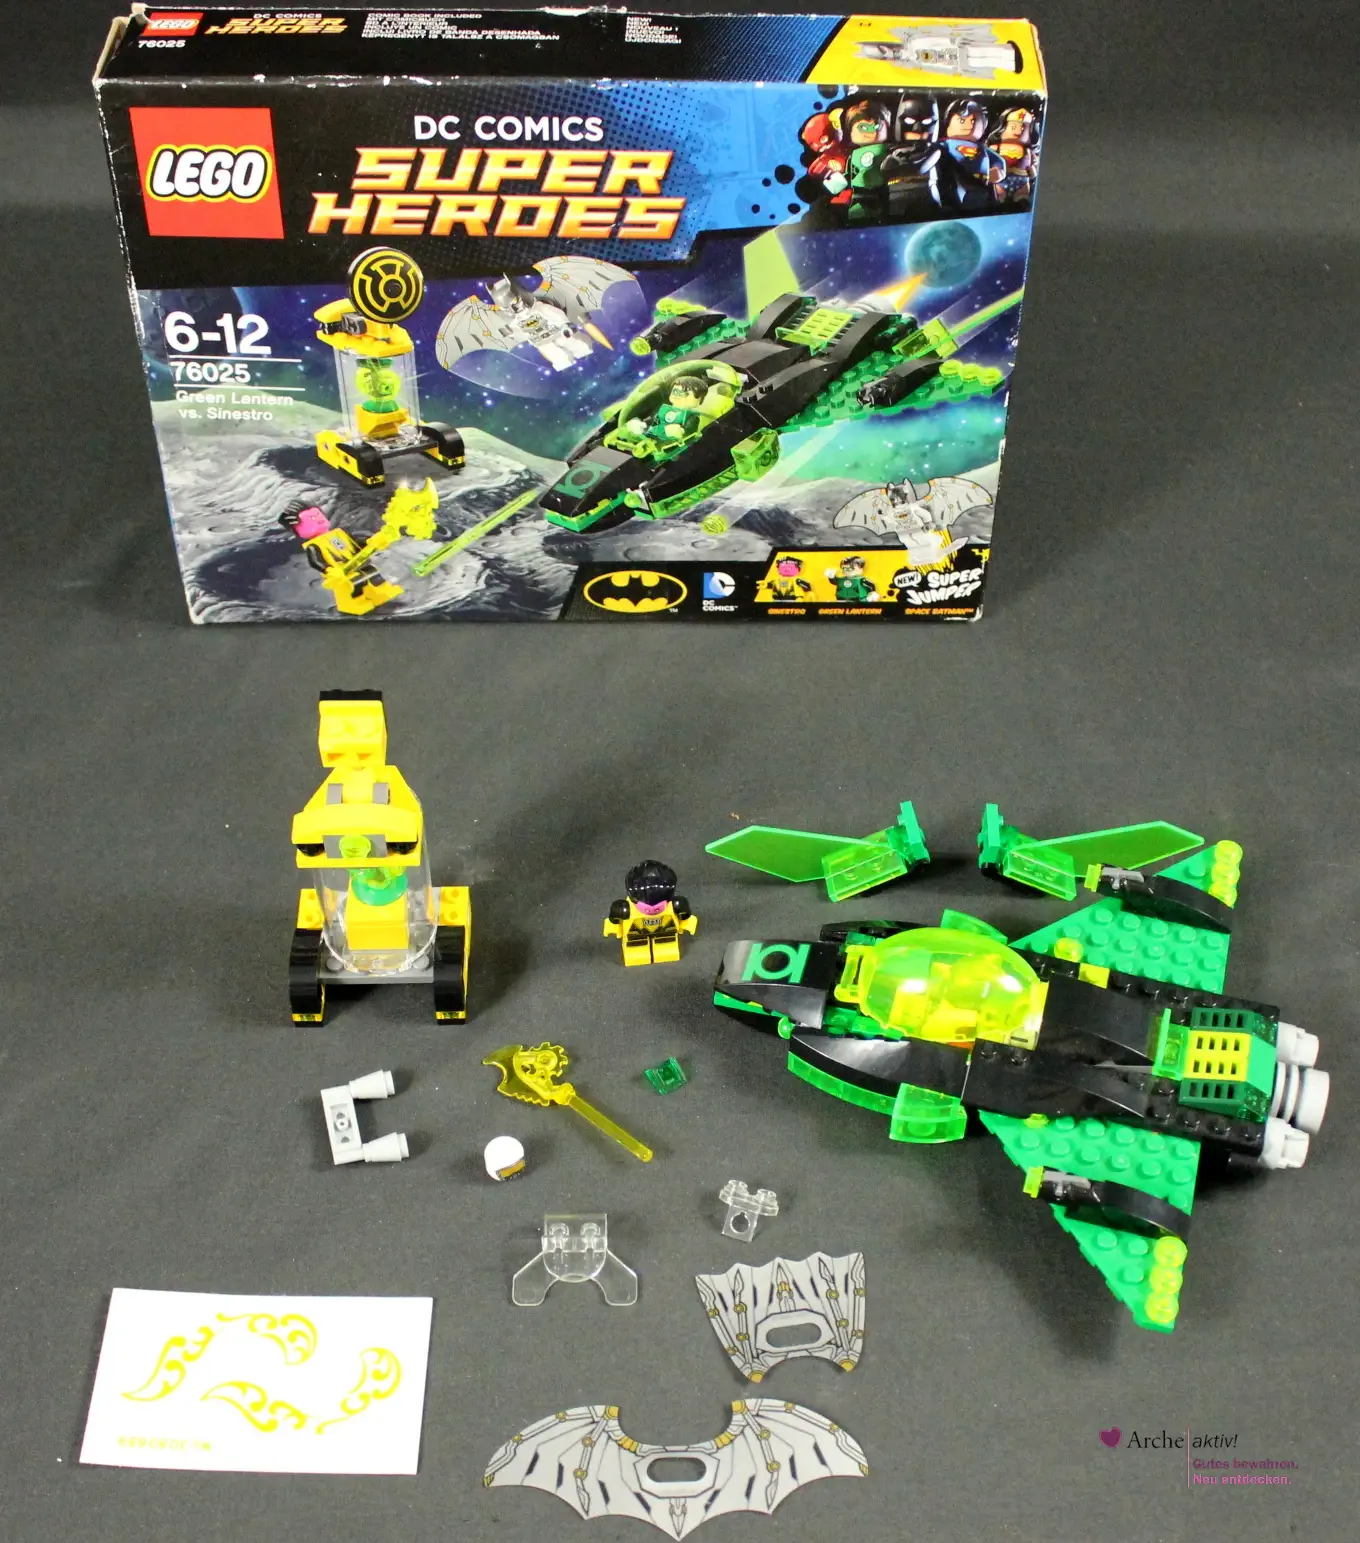 LEGO 76025 DC Comics Super Heroes, gebraucht